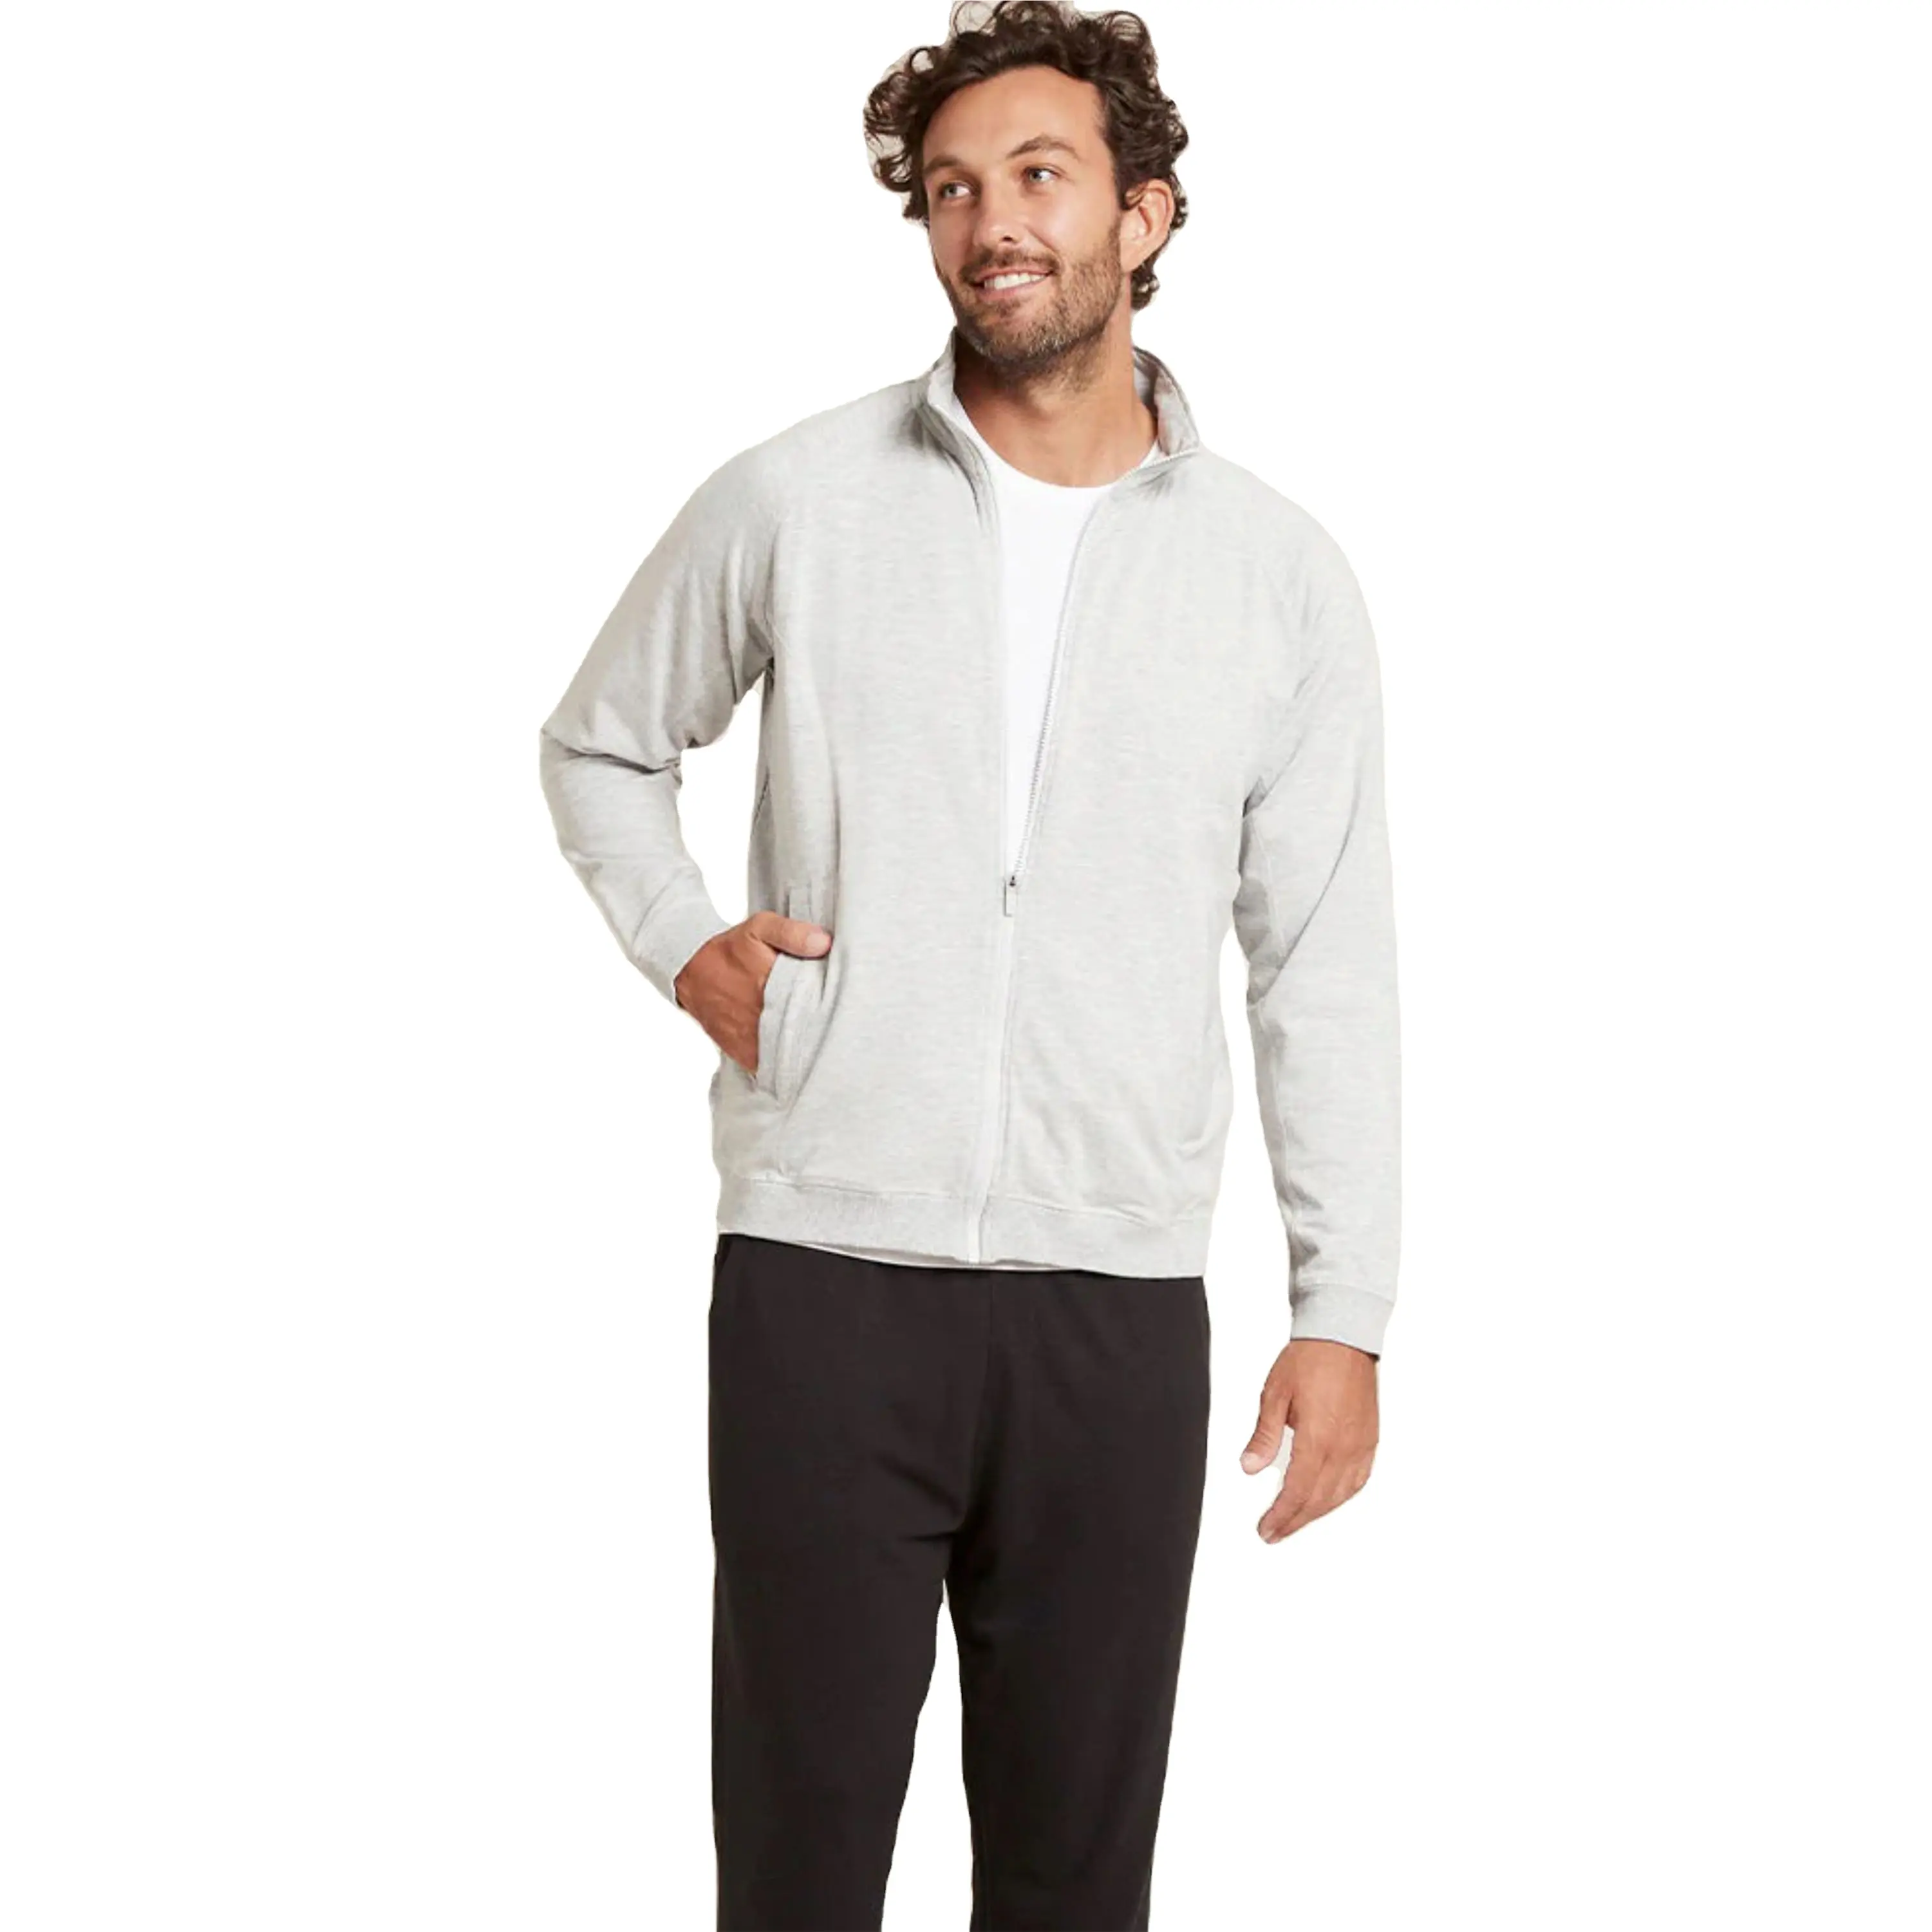 Unisex hochleistungs-athletischer Reißverschluss-Sweatshirt | atmungsaktiv schnell trocknender Polyester-Sweatshirt für Sport und Outdoor